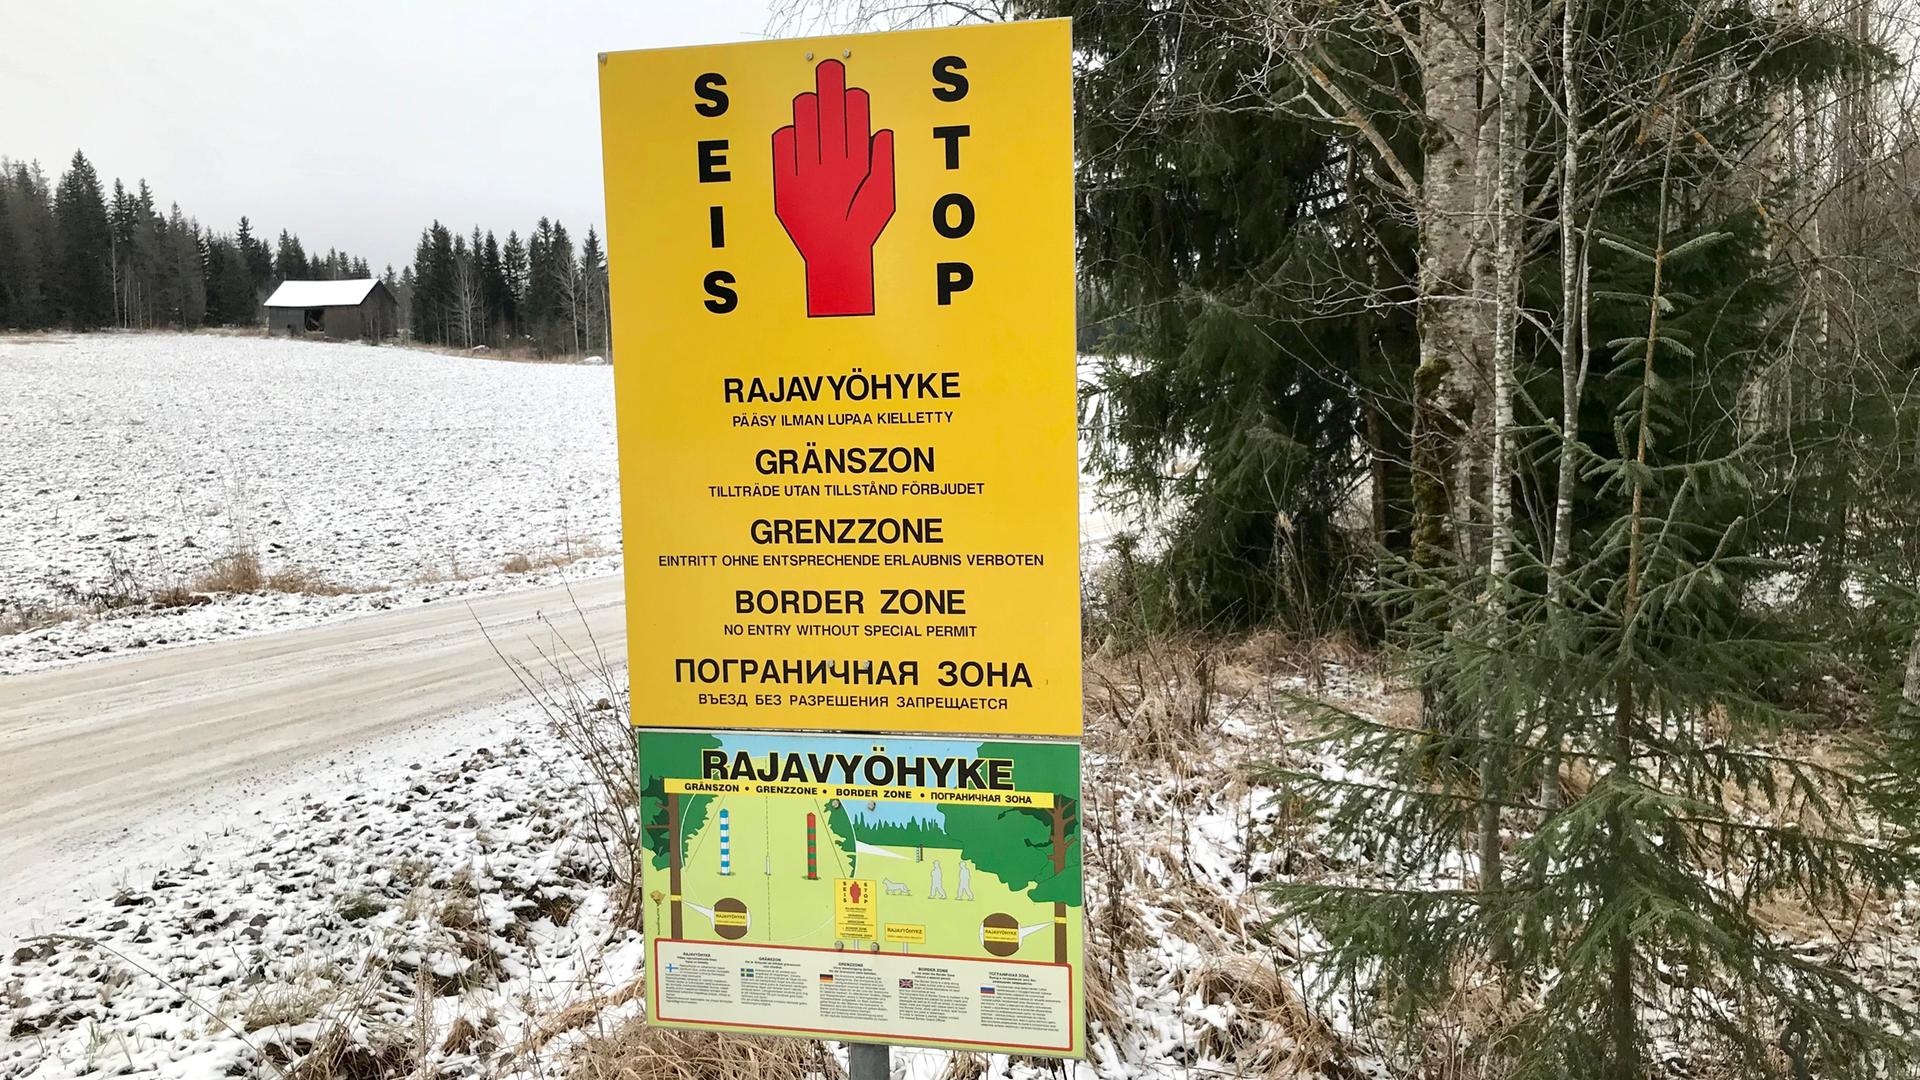 Ein gelbes Schild weist in mehreren Sprachen auf den Grenzbereich zwischen Finnland und Russland hin. Es steht entlang eines verschneiten Weges am Waldrand. Im Hintergrund ist ein Haus zu sehen.